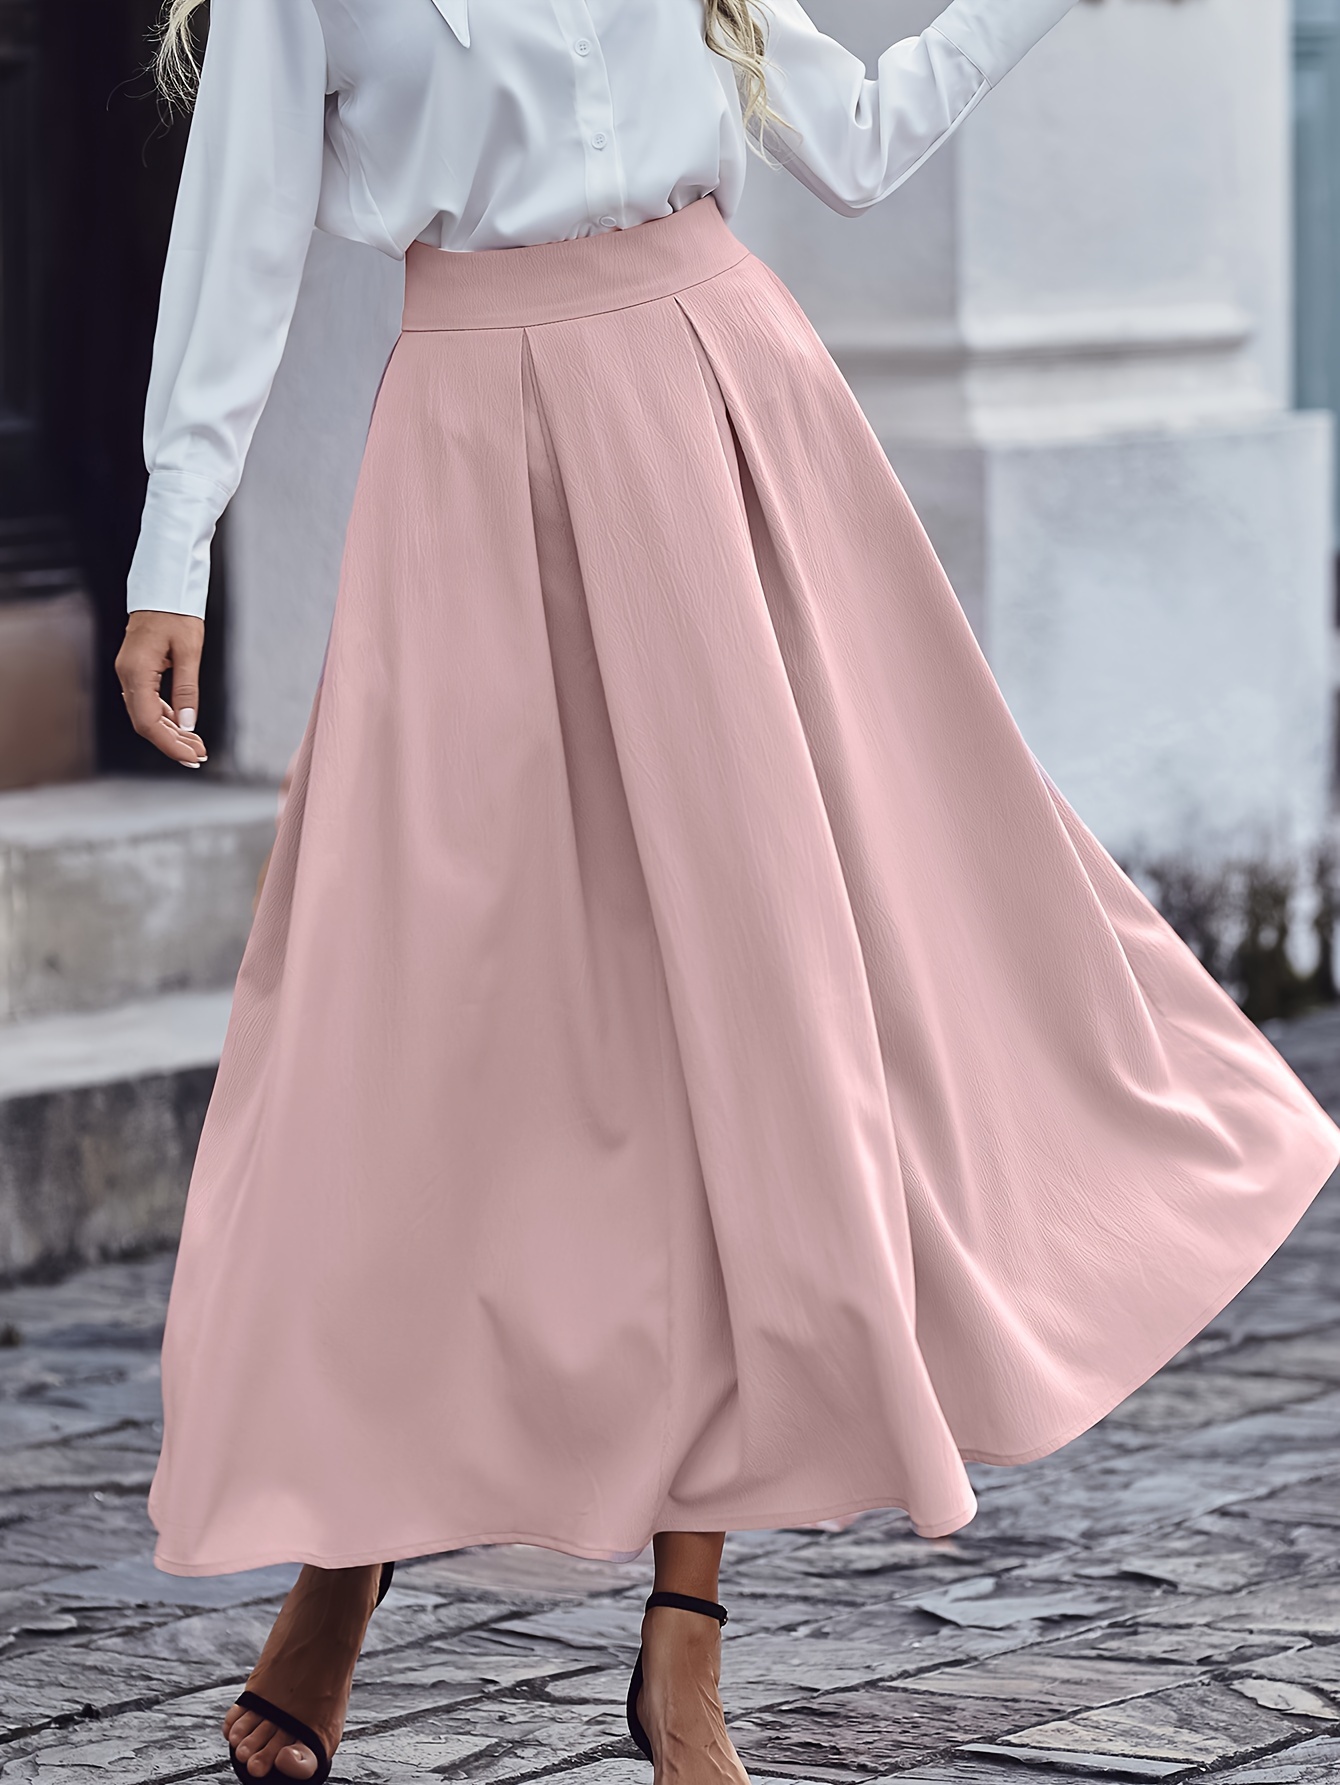 Falda De Línea A Anudada Sólida, Elegante Falda Larga Plisada De Cintura  Alta, Ropa De Mujer